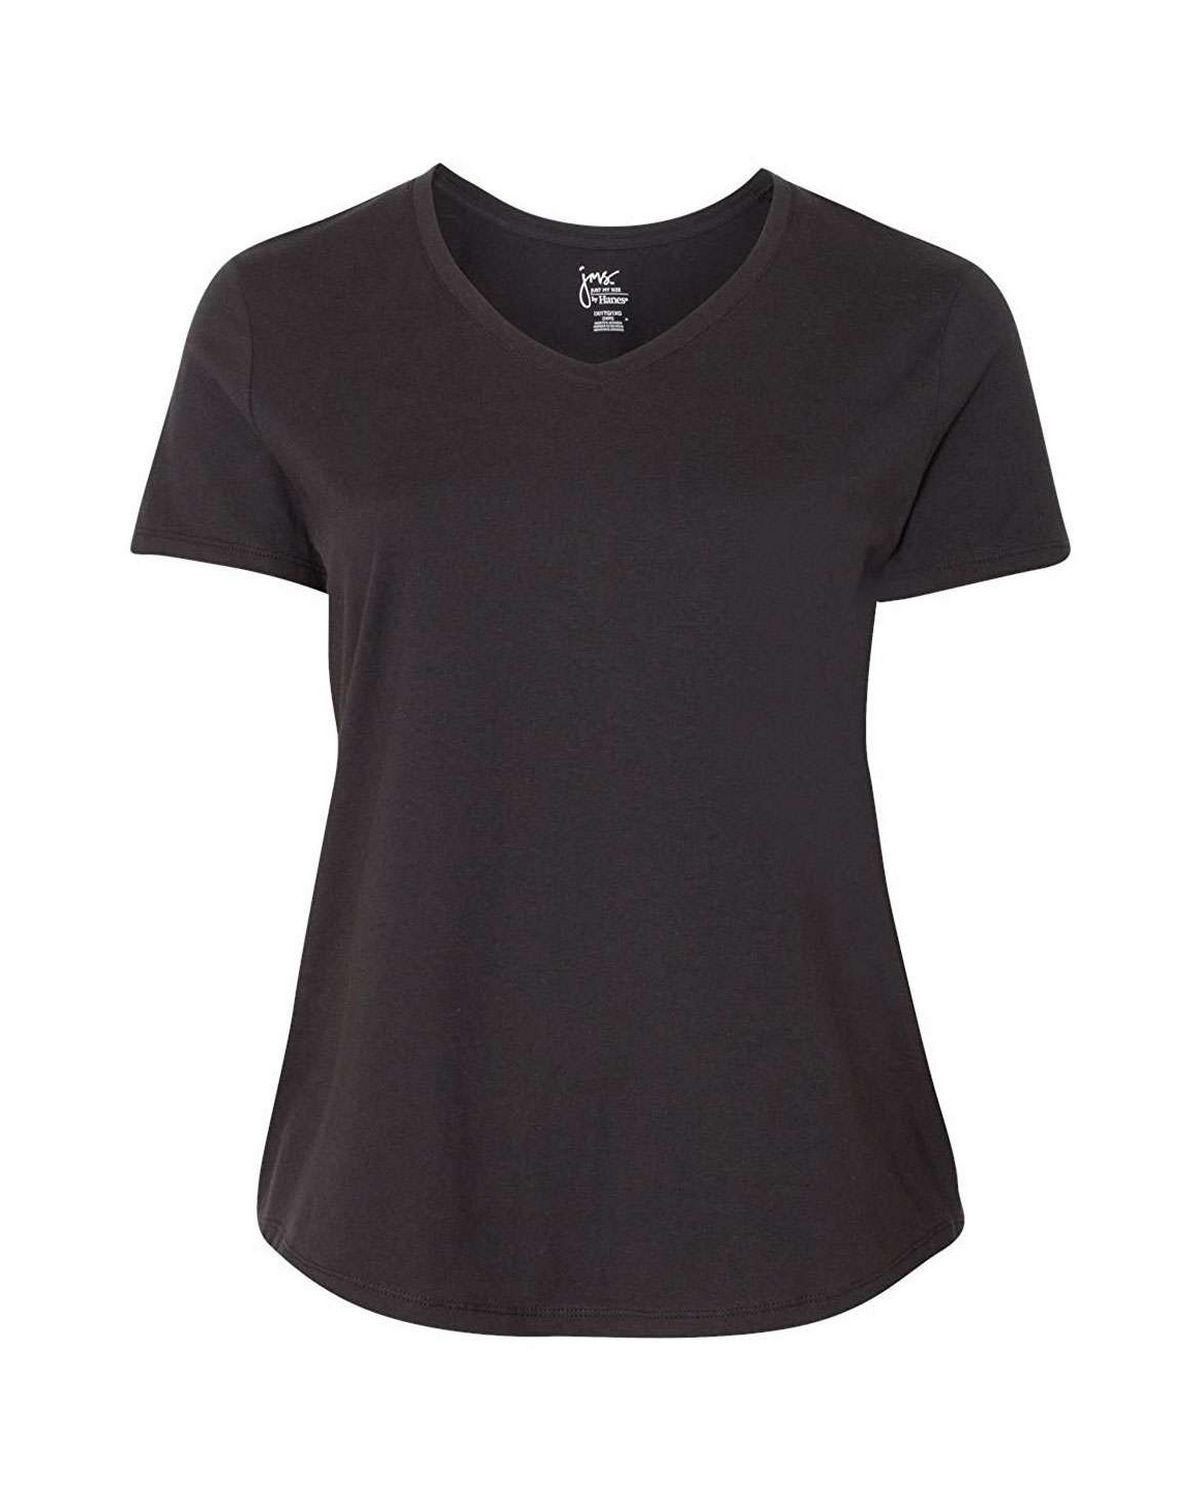 Hanes JMS30 Ladies JMS 100% Ringspun Cotton V-Neck T-Shirt